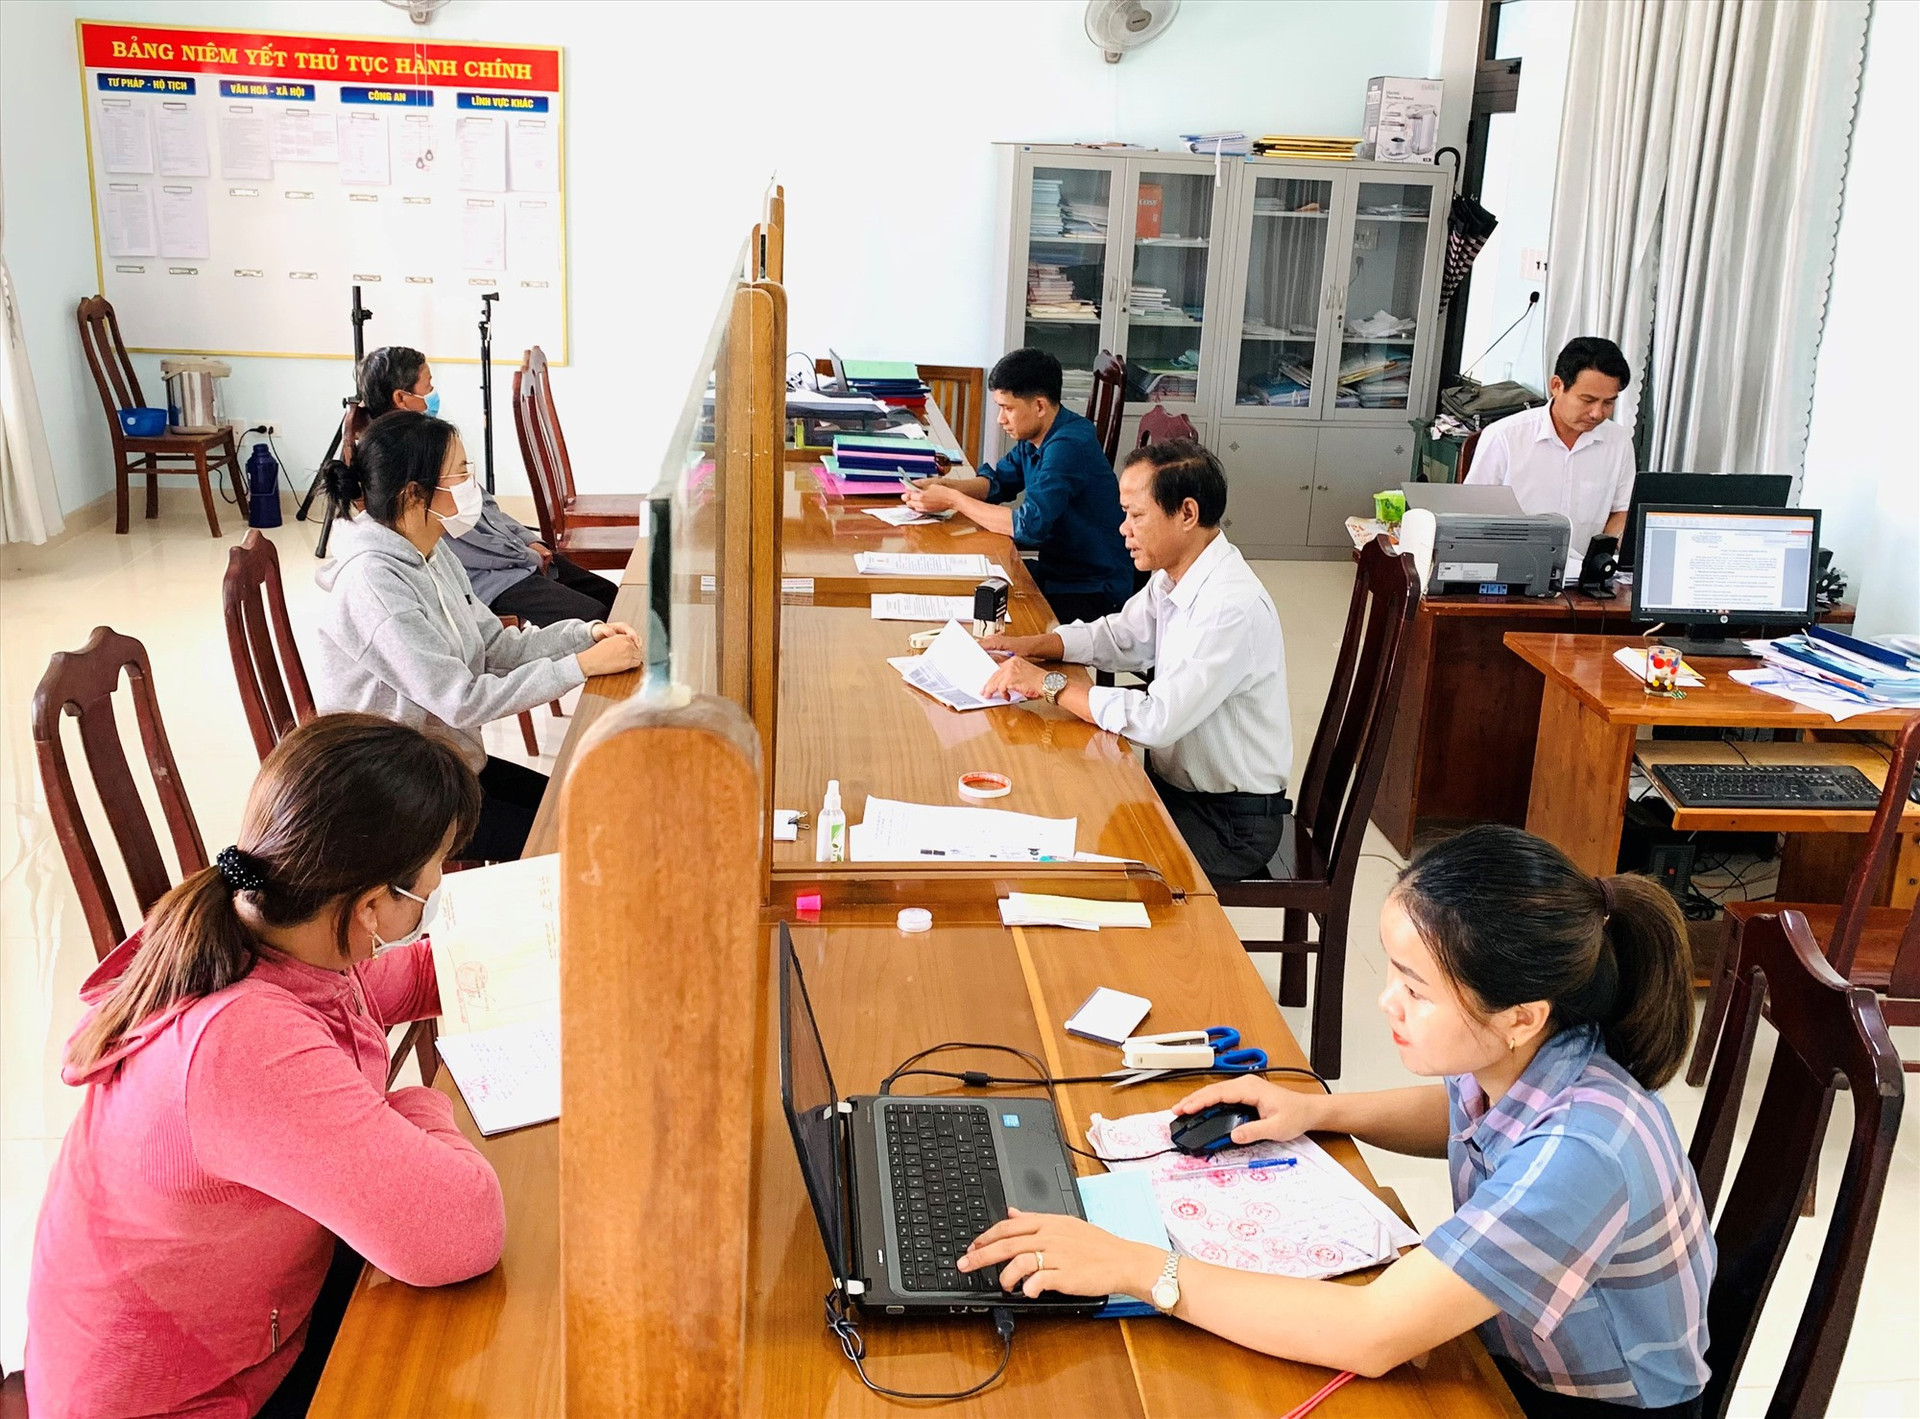 5 năm qua, huyện Duy Xuyên đã tạo bước chuyển biến tích cực trong việc thực hiện Nghị quyết số 18 của Ban Chấp hành Trung ương Đảng. Ảnh: H.N